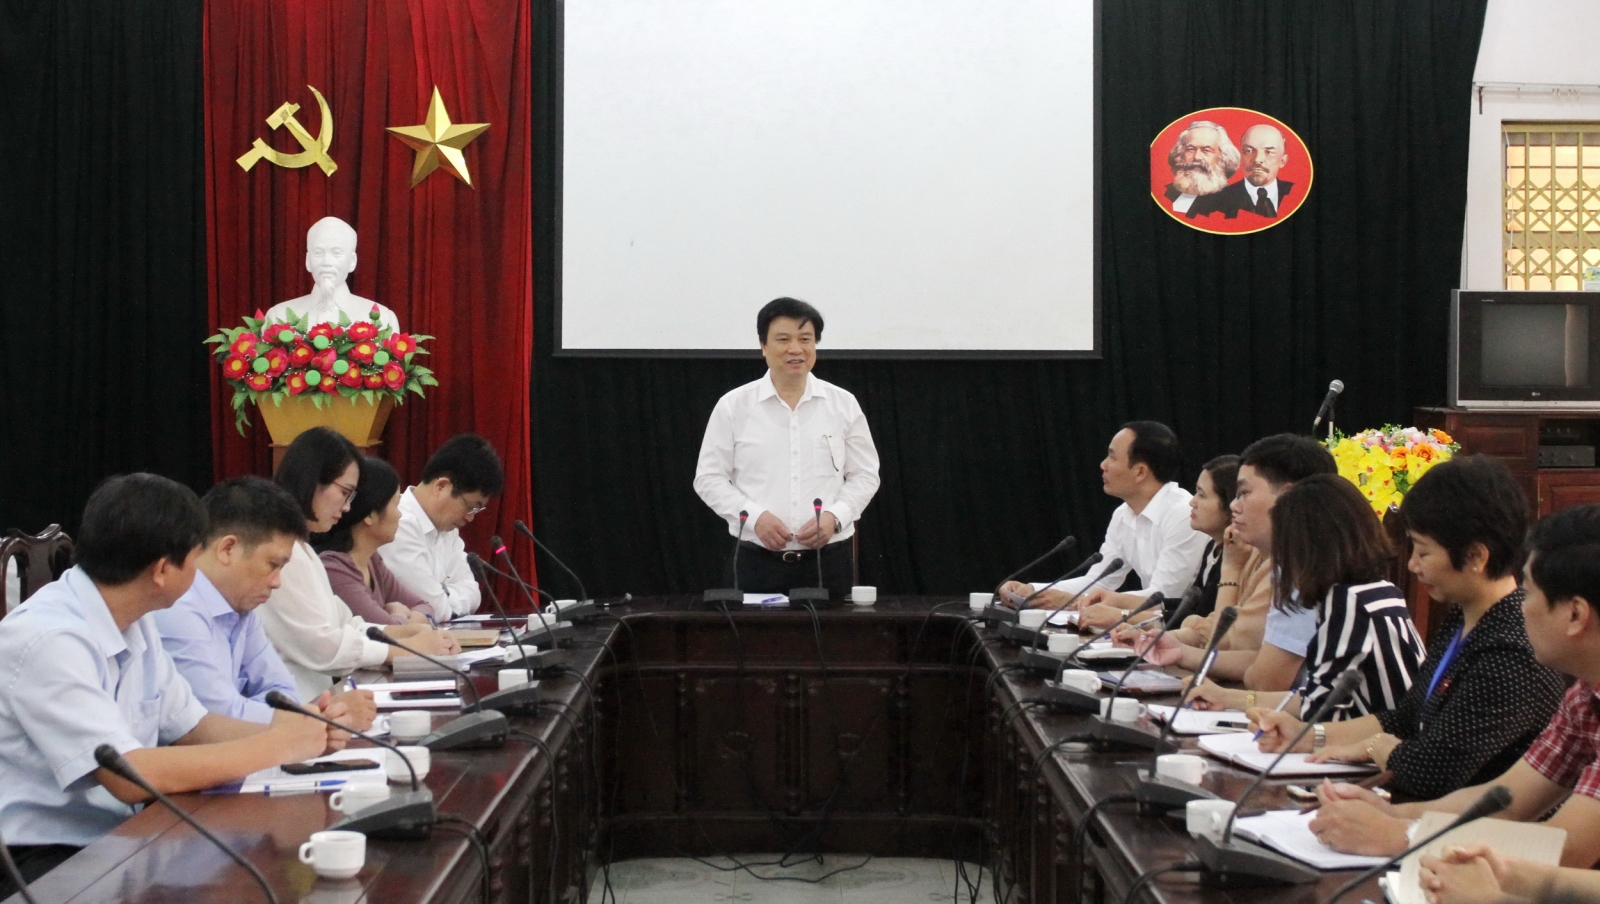 Thứ trưởng Nguyễn Hữu Độ kiểm tra công tác chuẩn bị chương trình giáo dục phổ thông mới tại Trường Hữu nghị T78